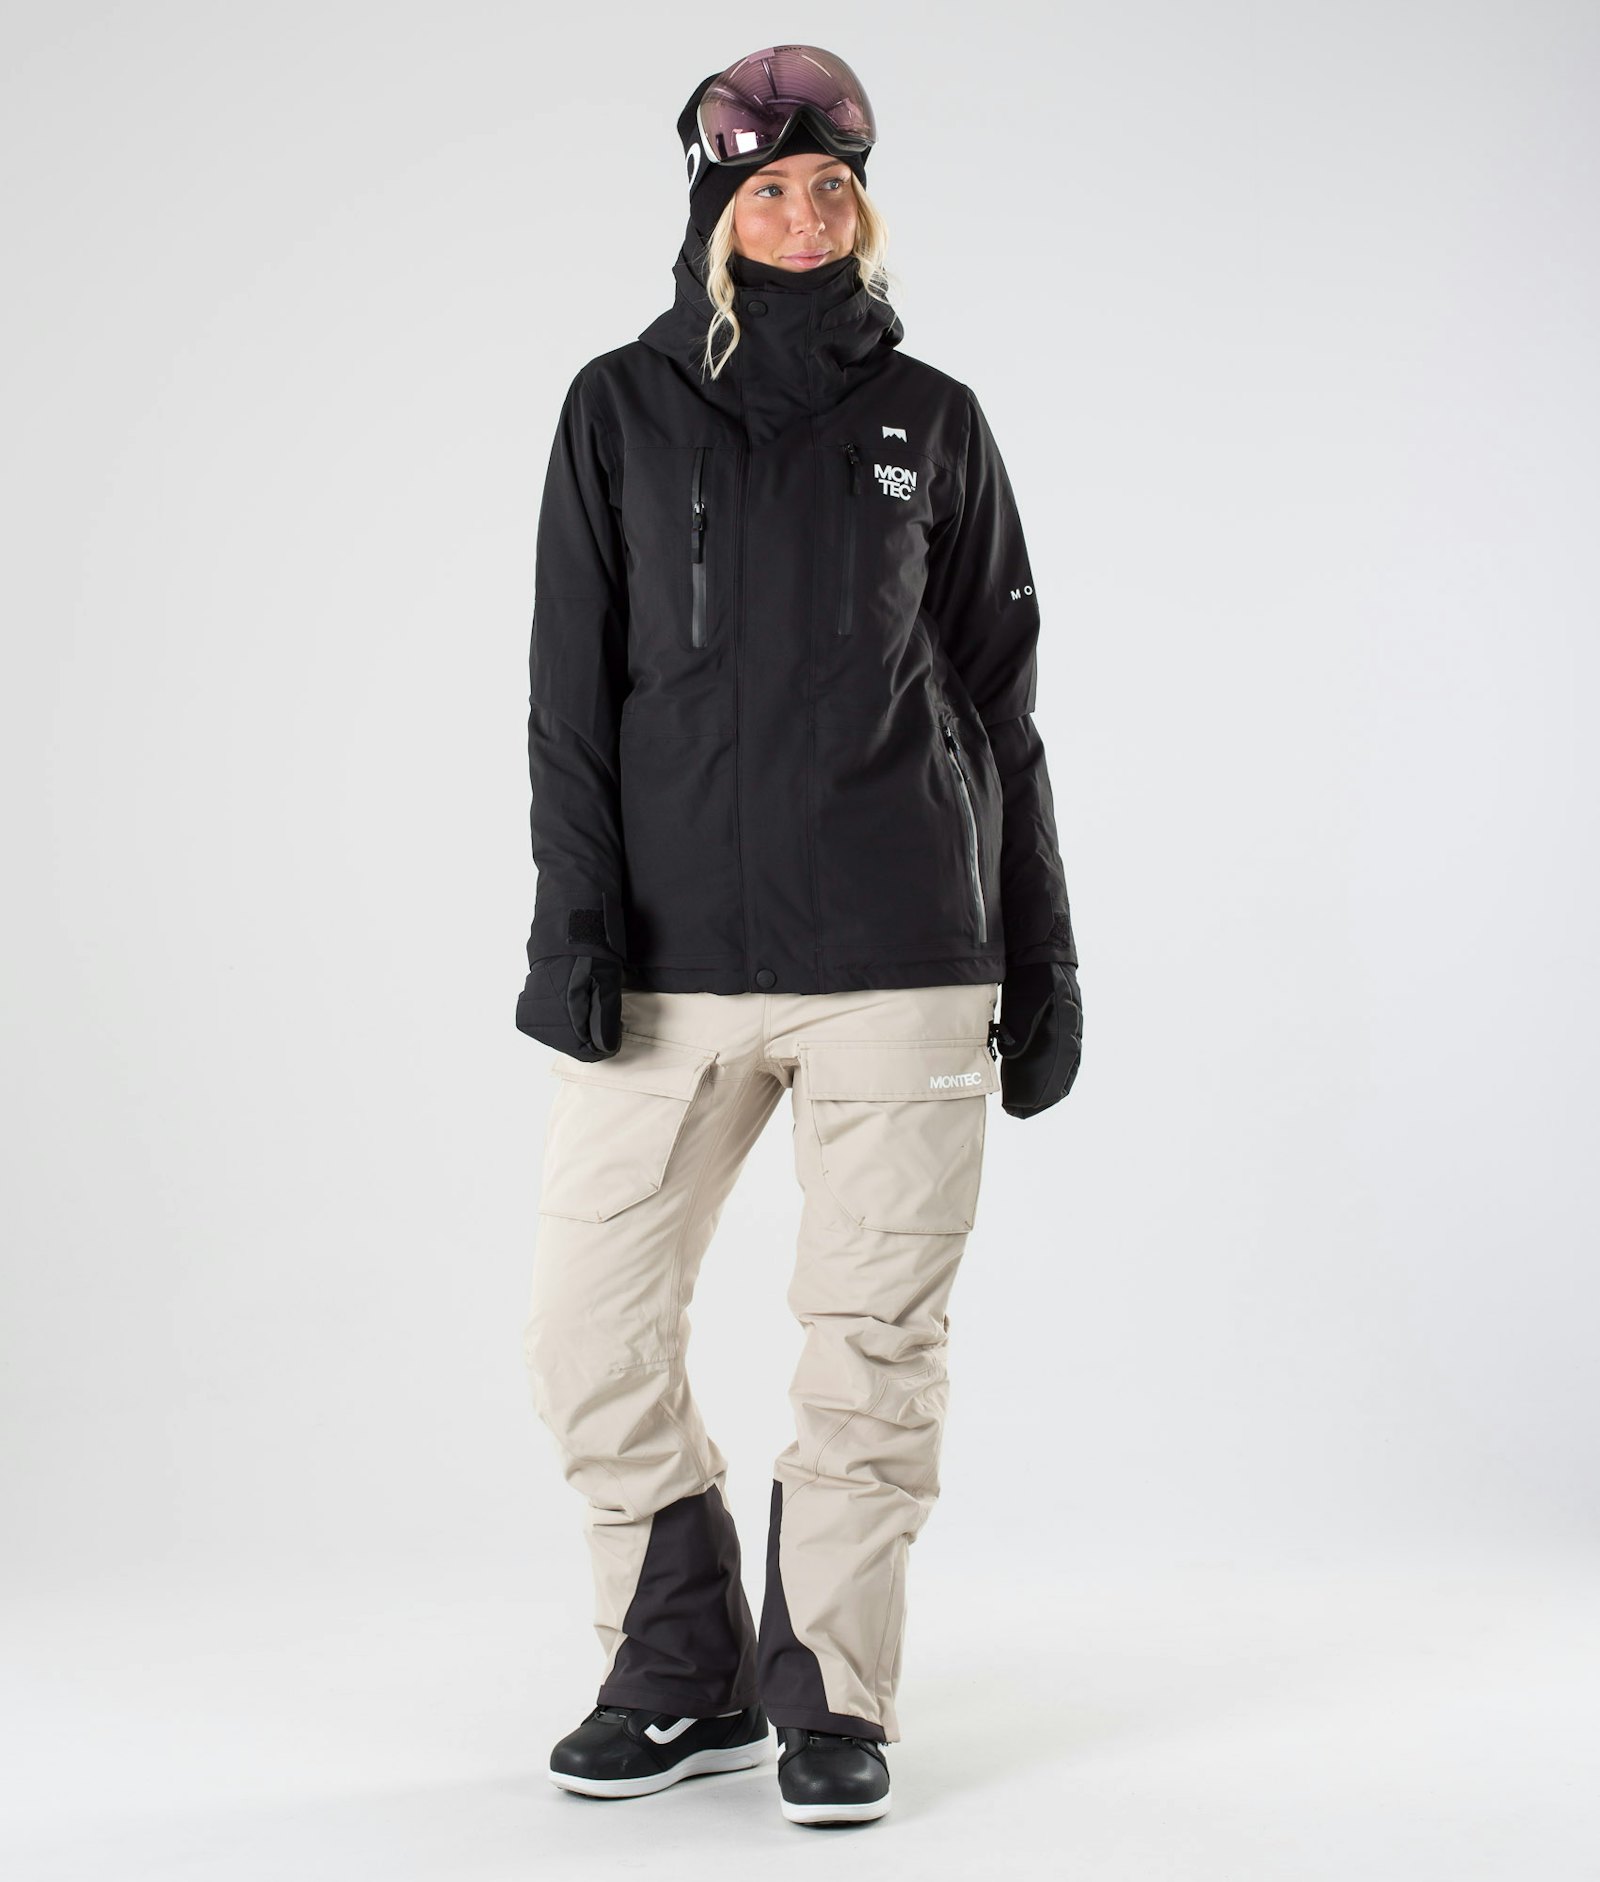 Fawk W 2019 Snowboardjacke Damen Black